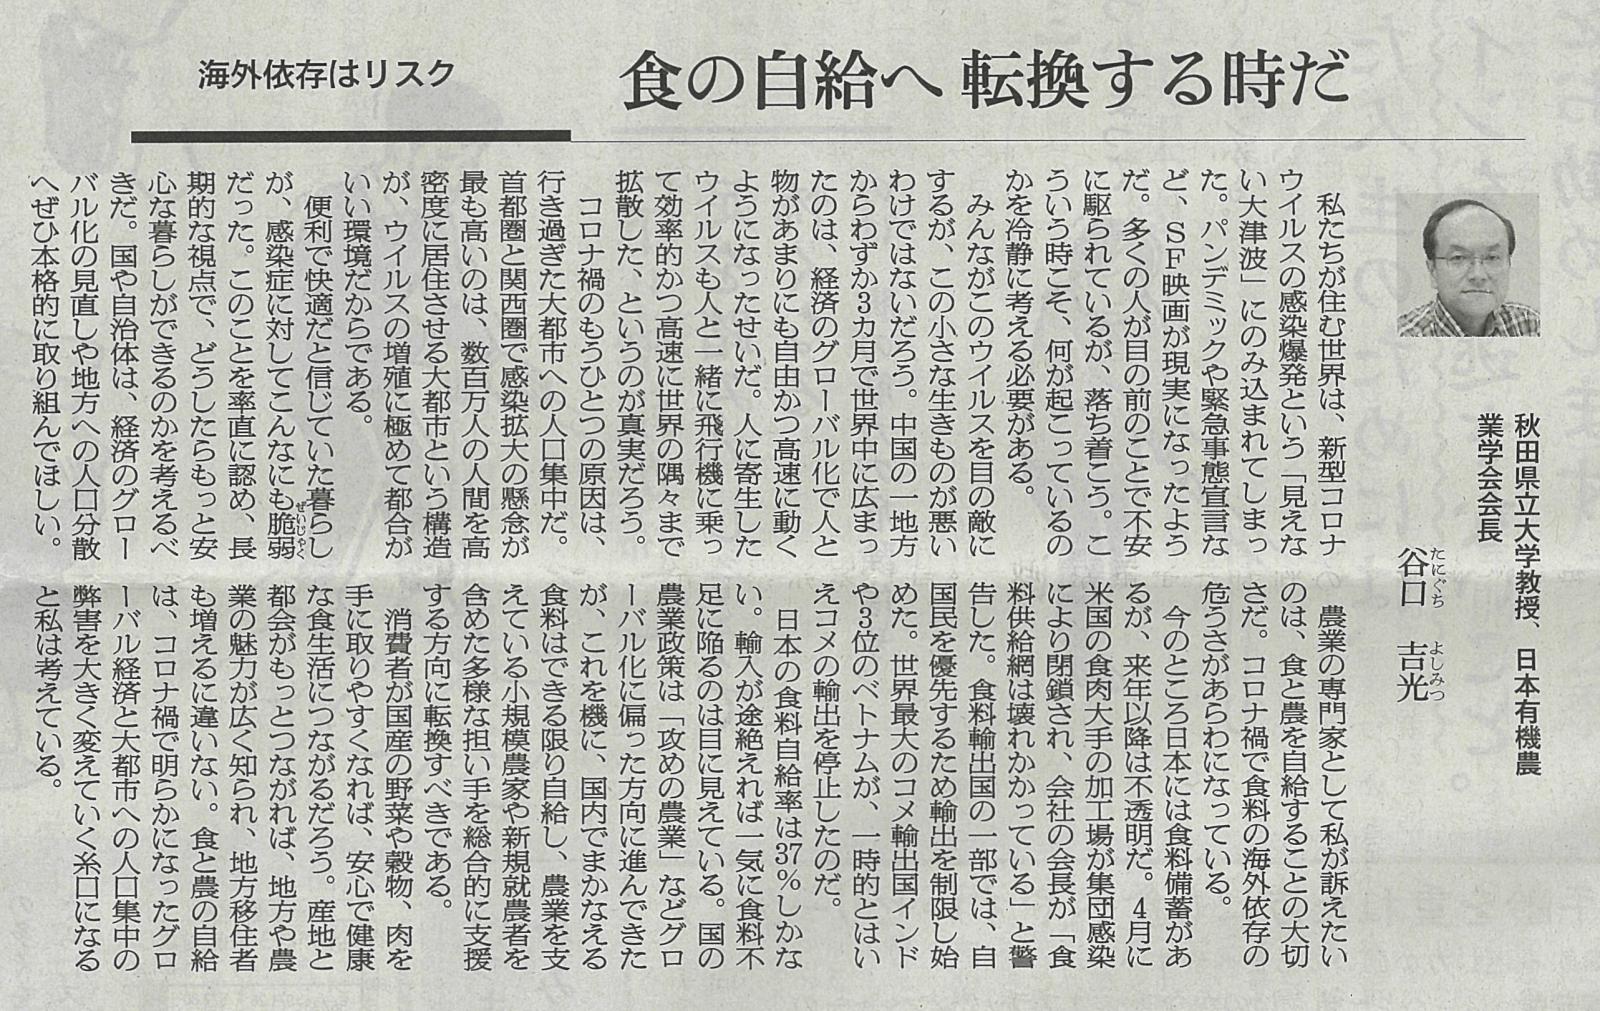 本学教員の投稿記事が朝日新聞に掲載されました